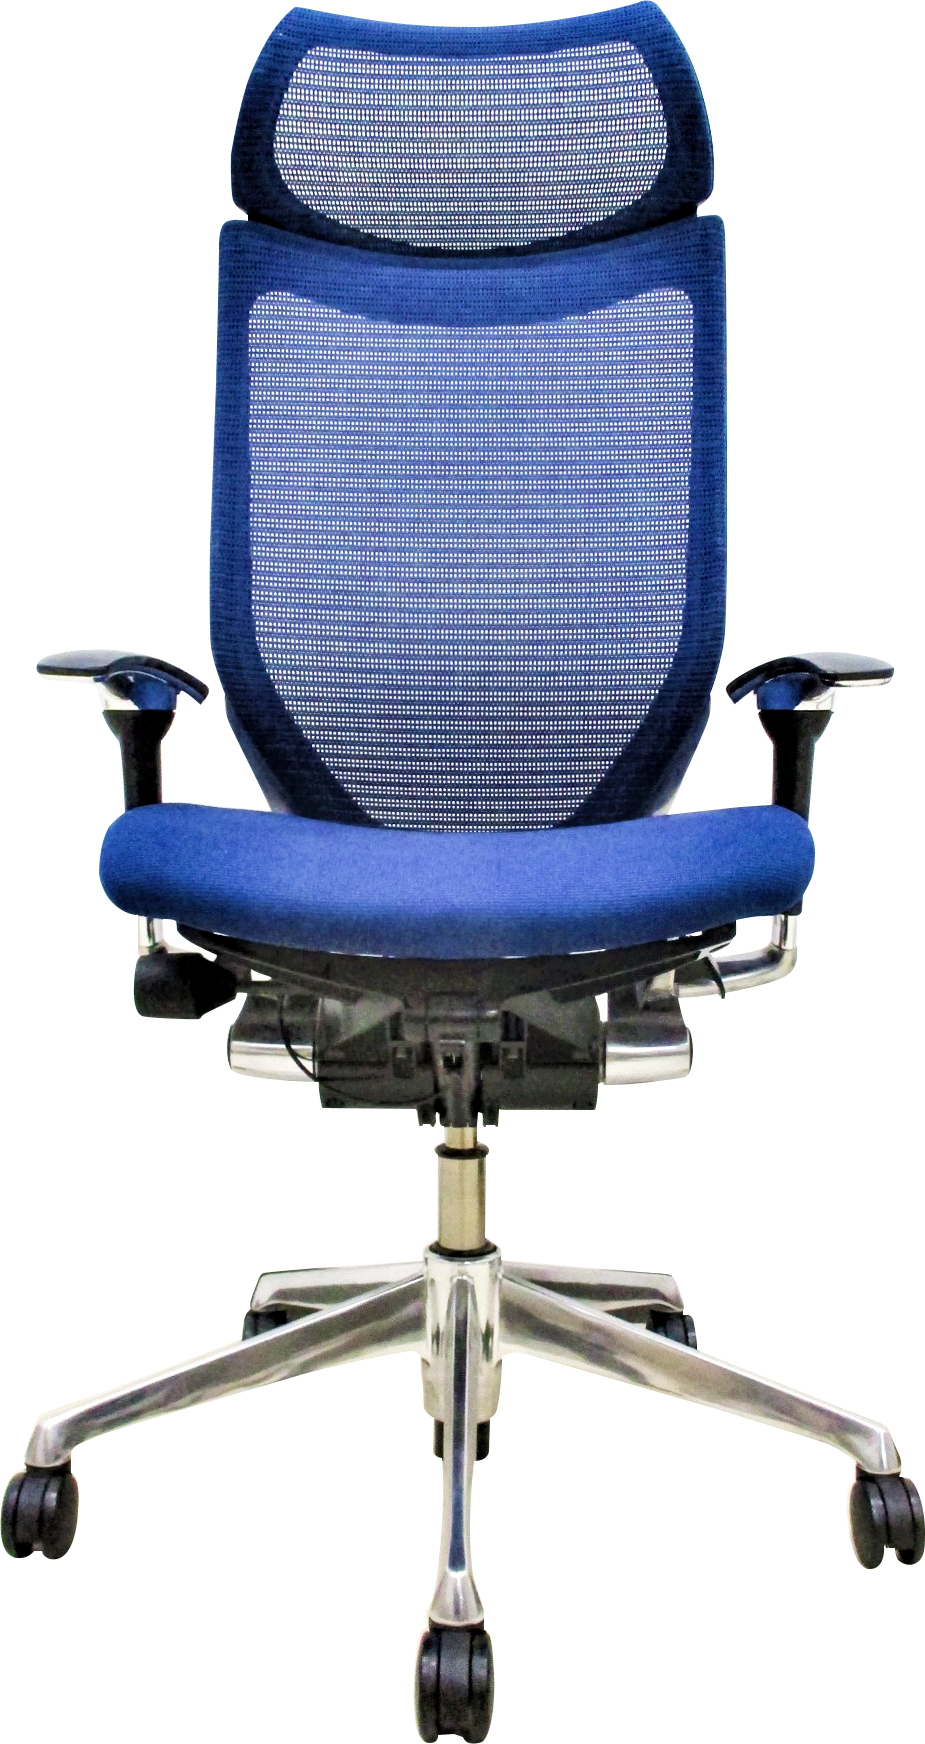 It業界が注目するエンジニアに人気の椅子6選 中古格安オフィス家具通販ならオフィスバスターズ